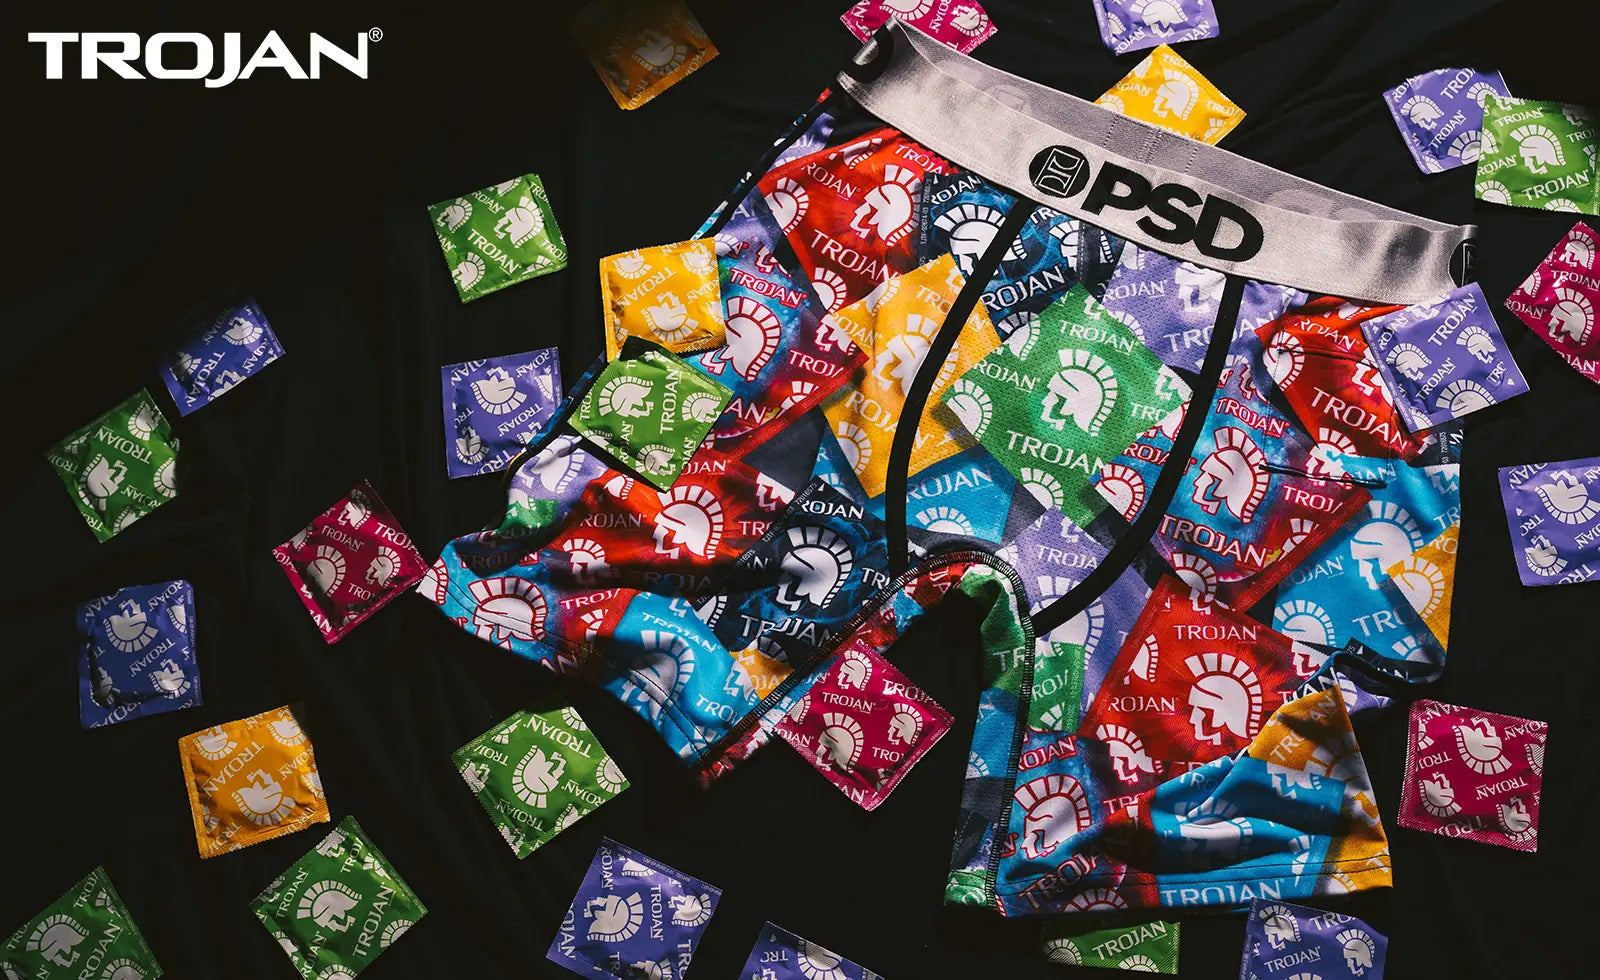 Magnum Condoms Wrapper and Logo Symbol Men's PSD Boxer Briefs-Medium  (32-34) 